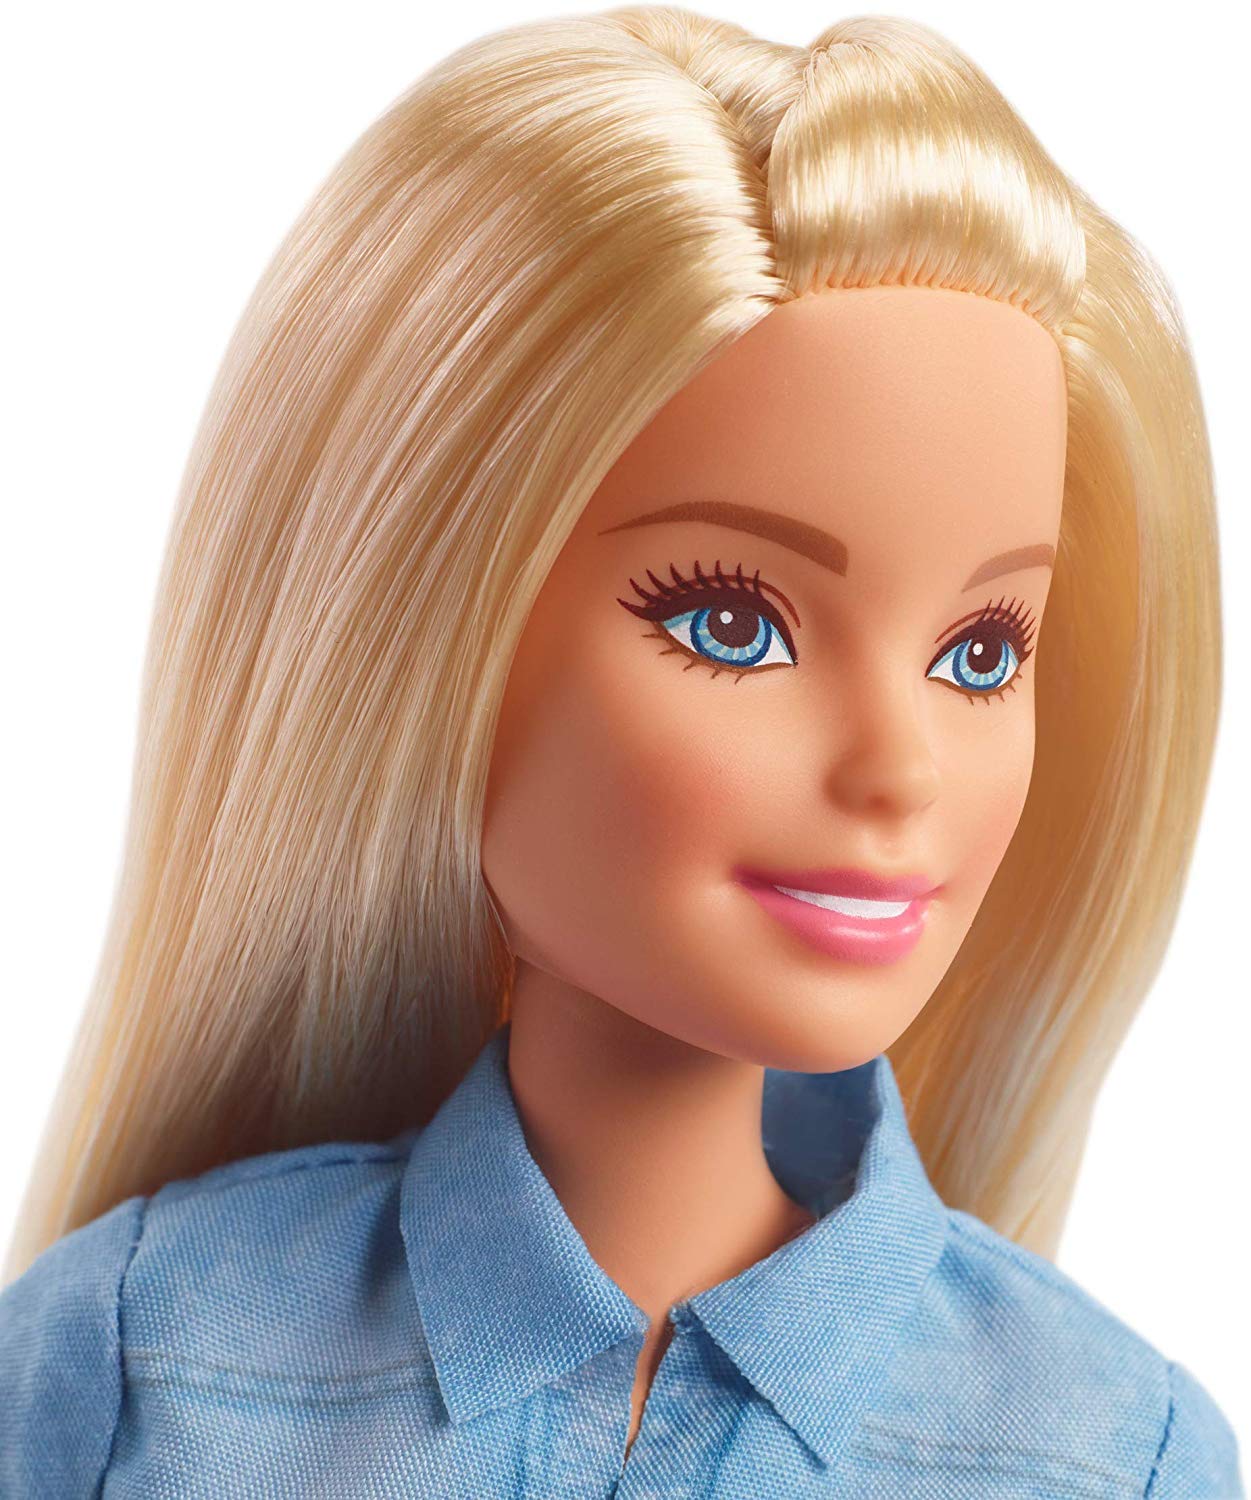 バービー(Barbie) ドリームハウスアドベンチャー バービー 着せ替え人形3歳~GHR58